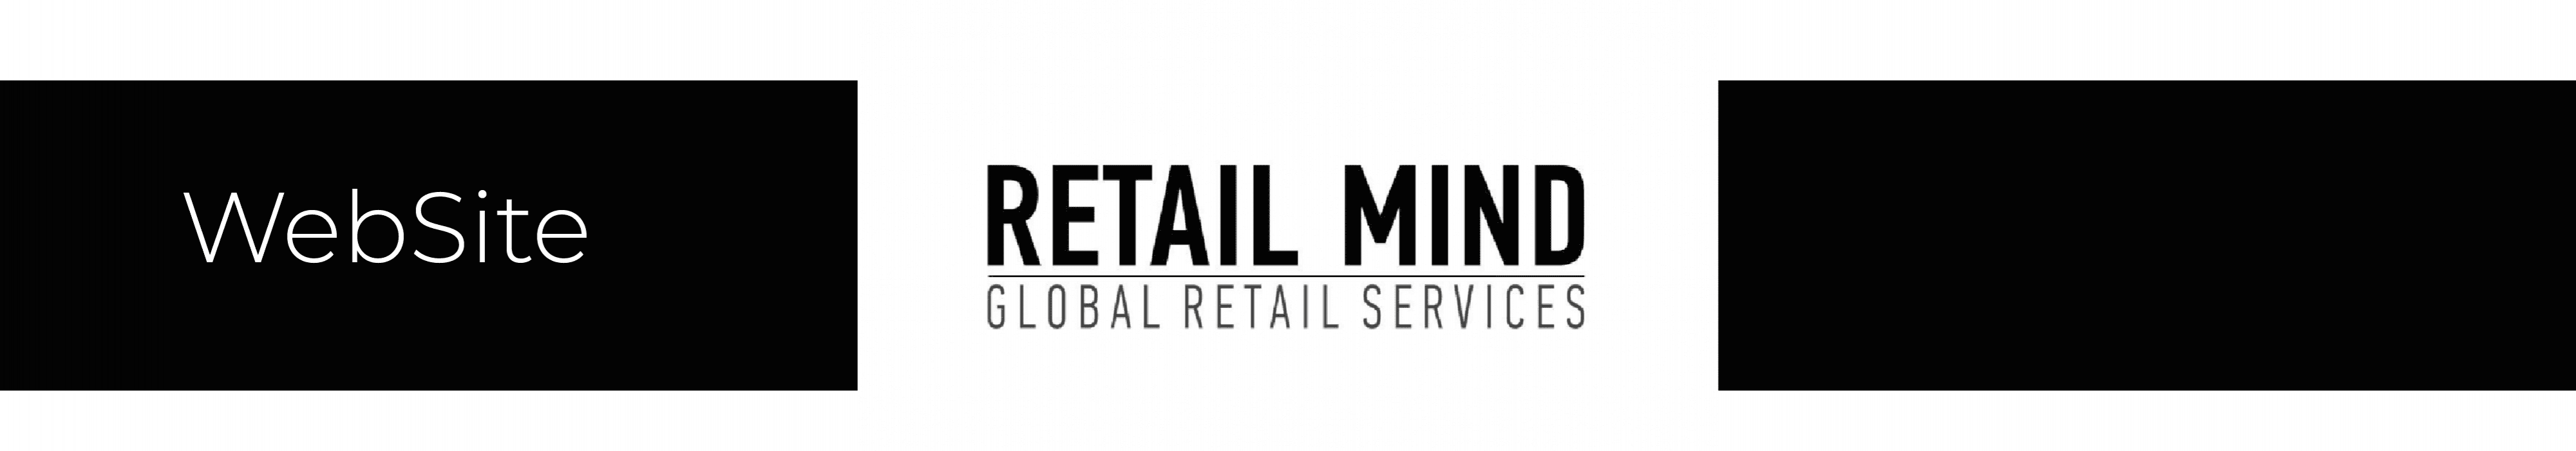 retail mind